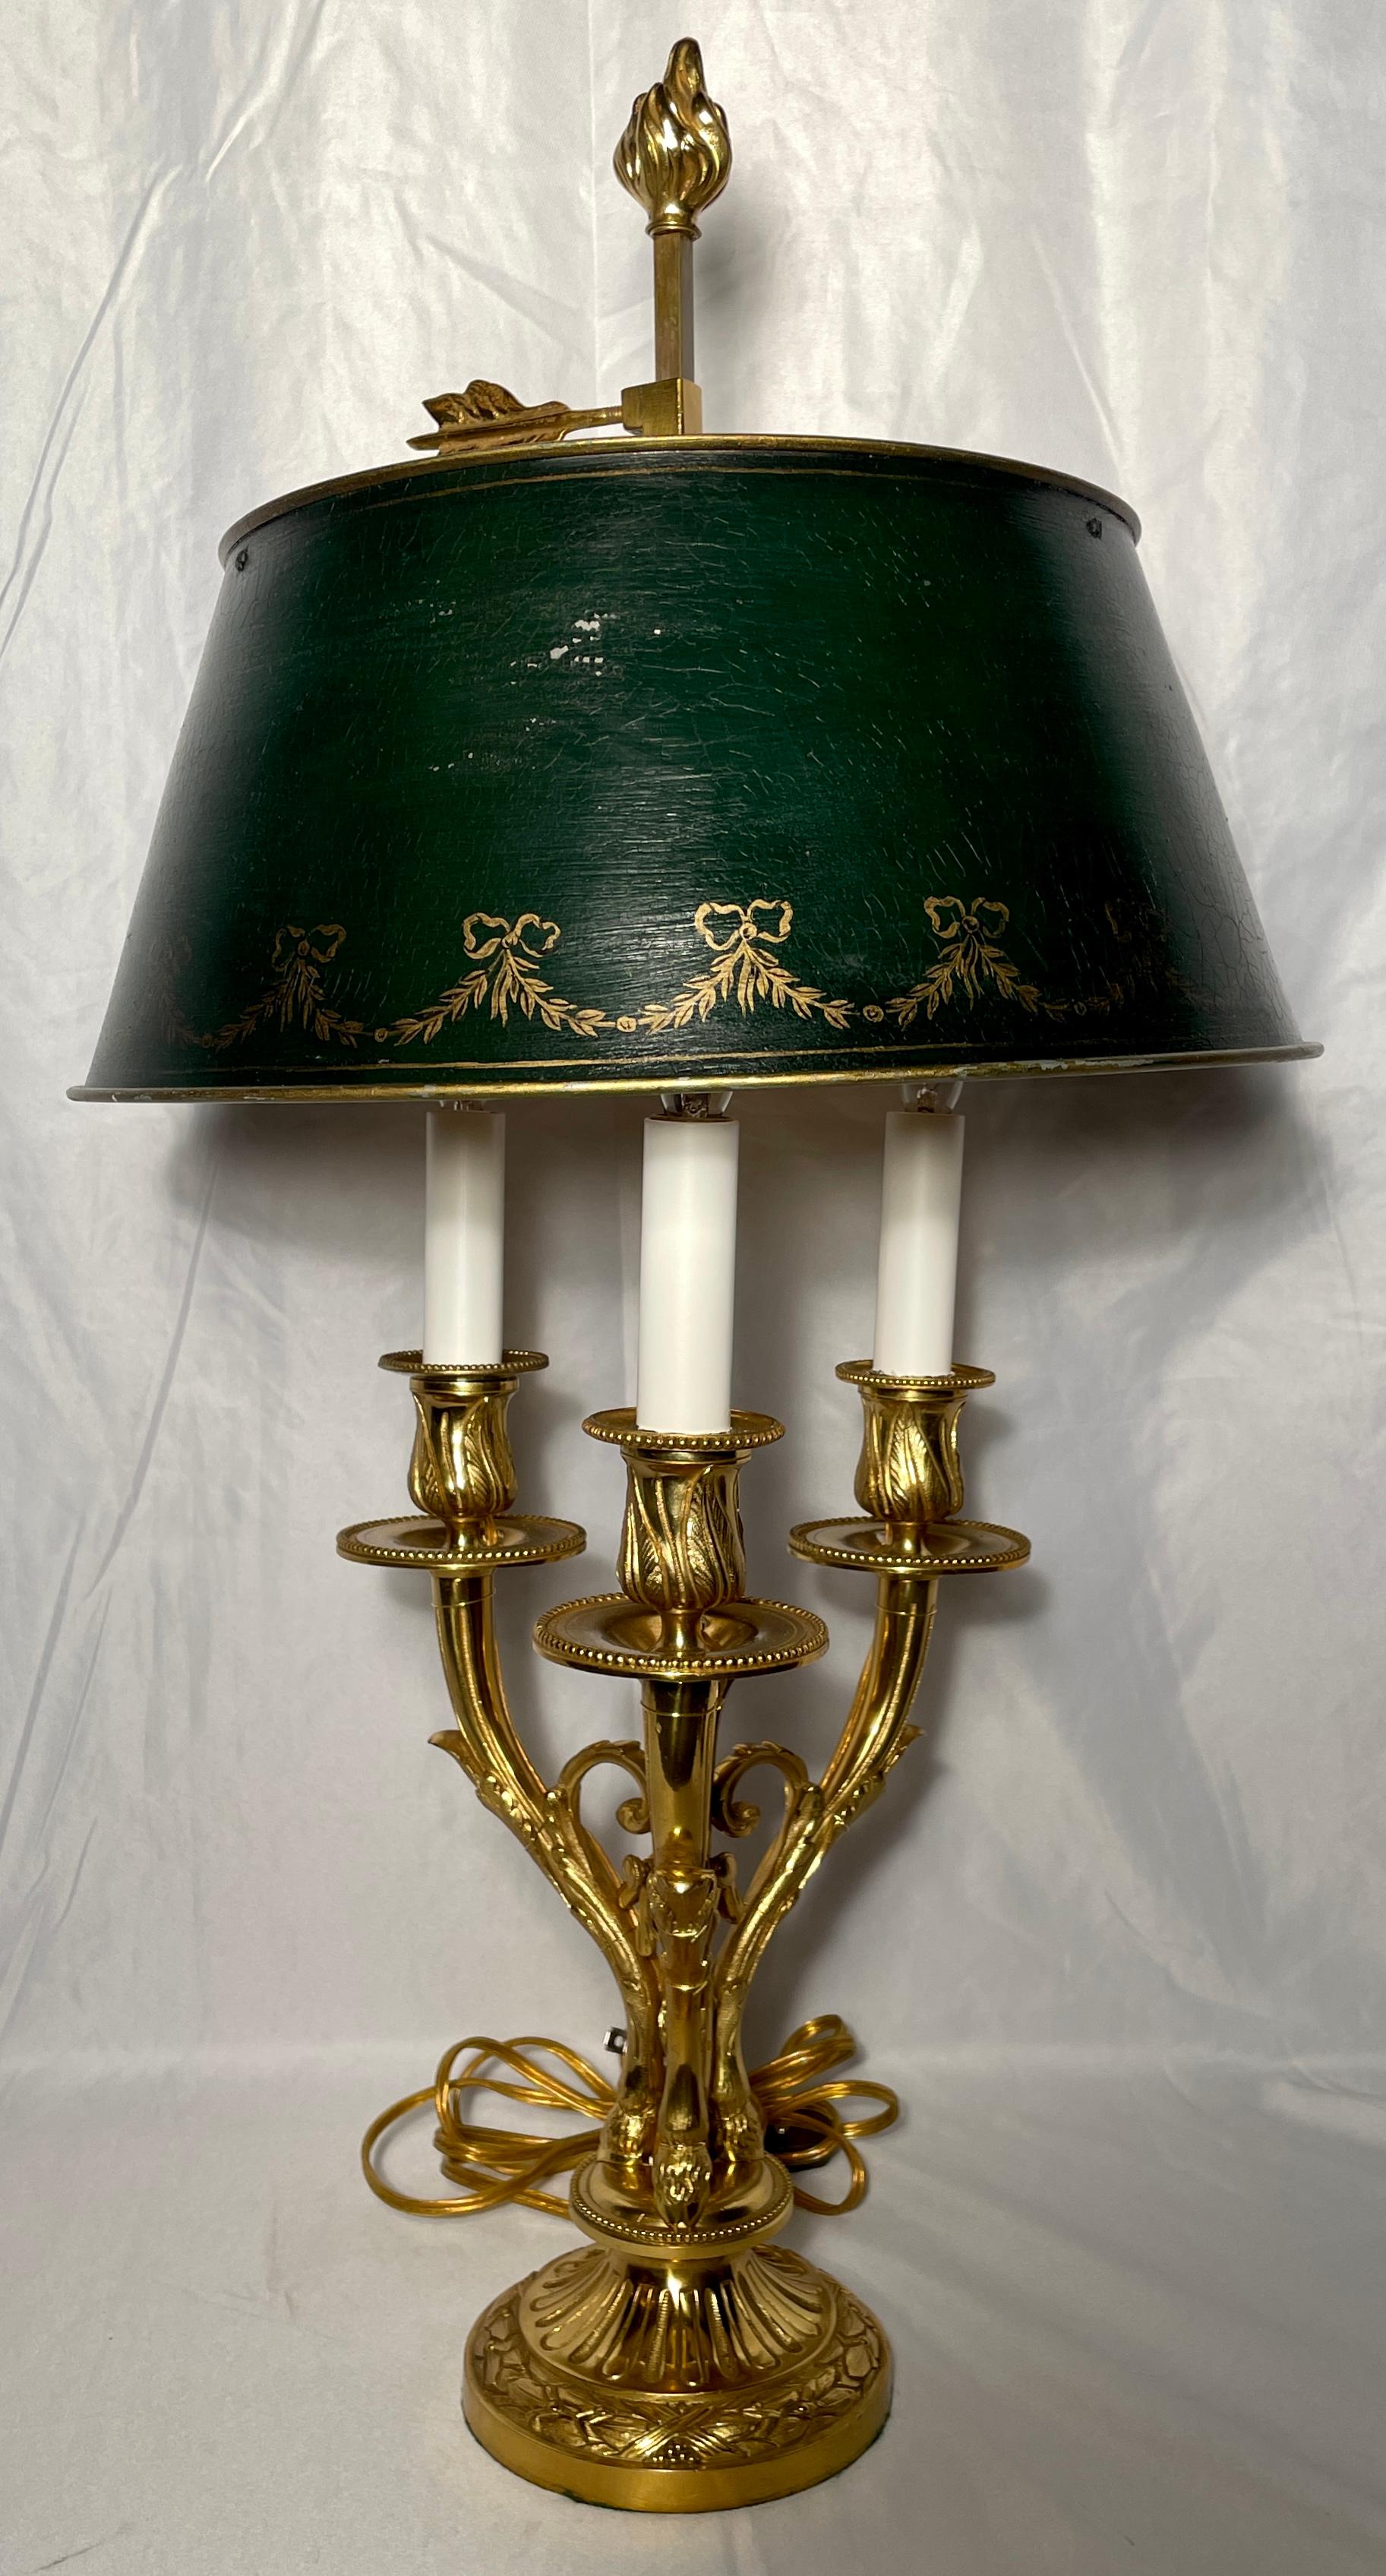 Paire de lampes bouillottes en bronze d'origine française, vers 1890. 